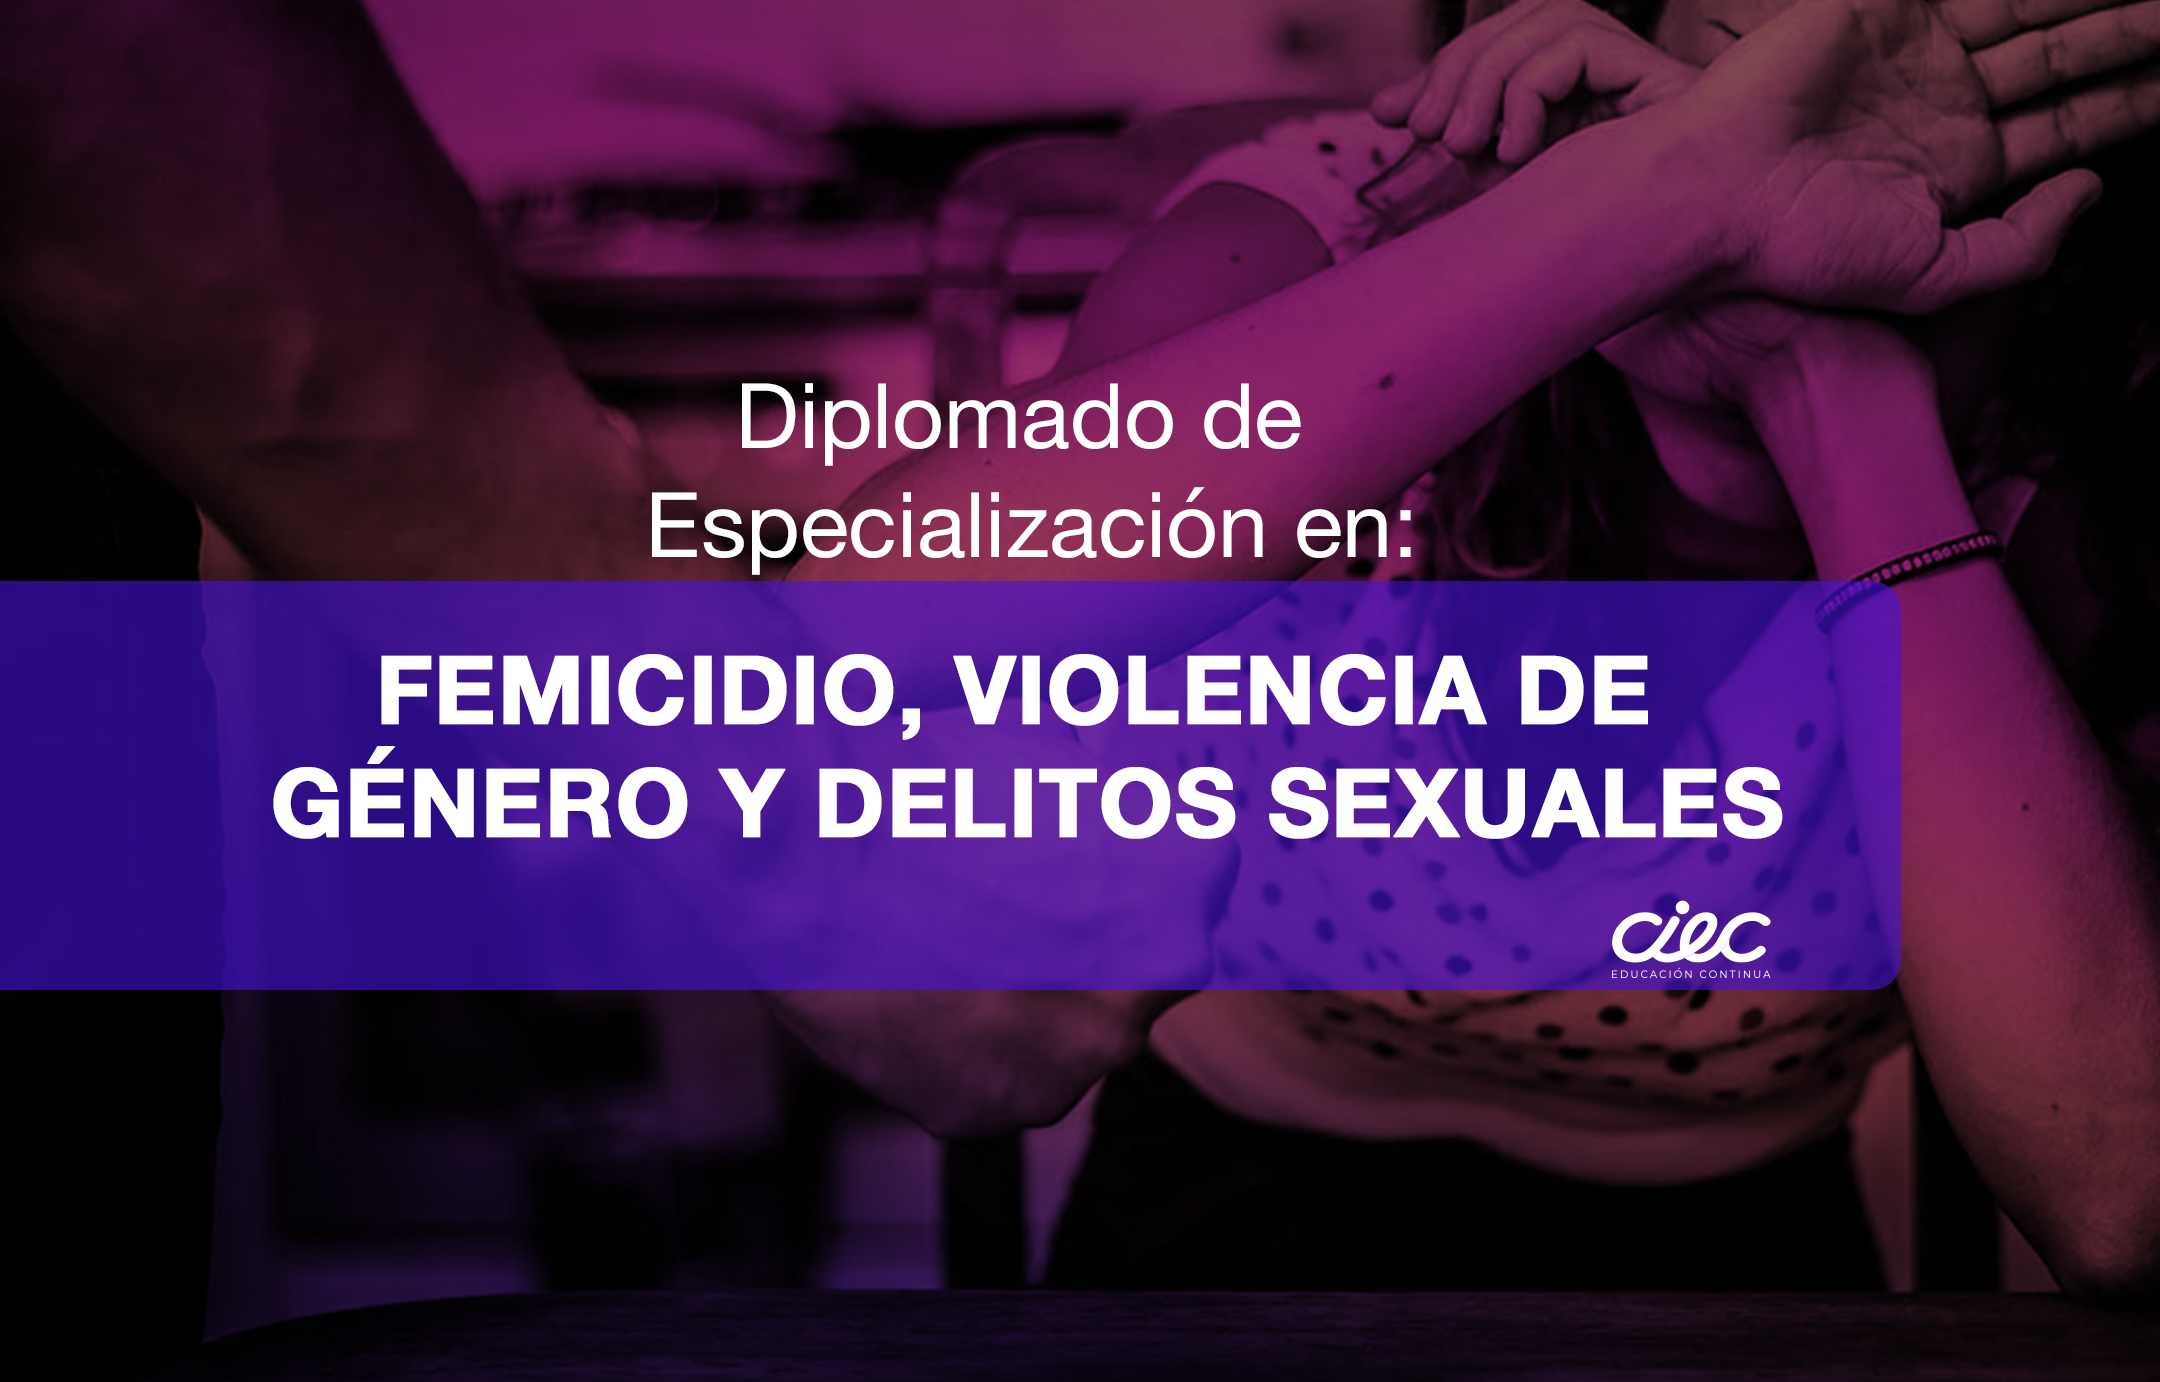 DIPLOMADO DE ESPECIALIZACIÓN EN FEMICIDIO, VIOLENCIA DE GÉNERO Y DELITOS SEXUALES